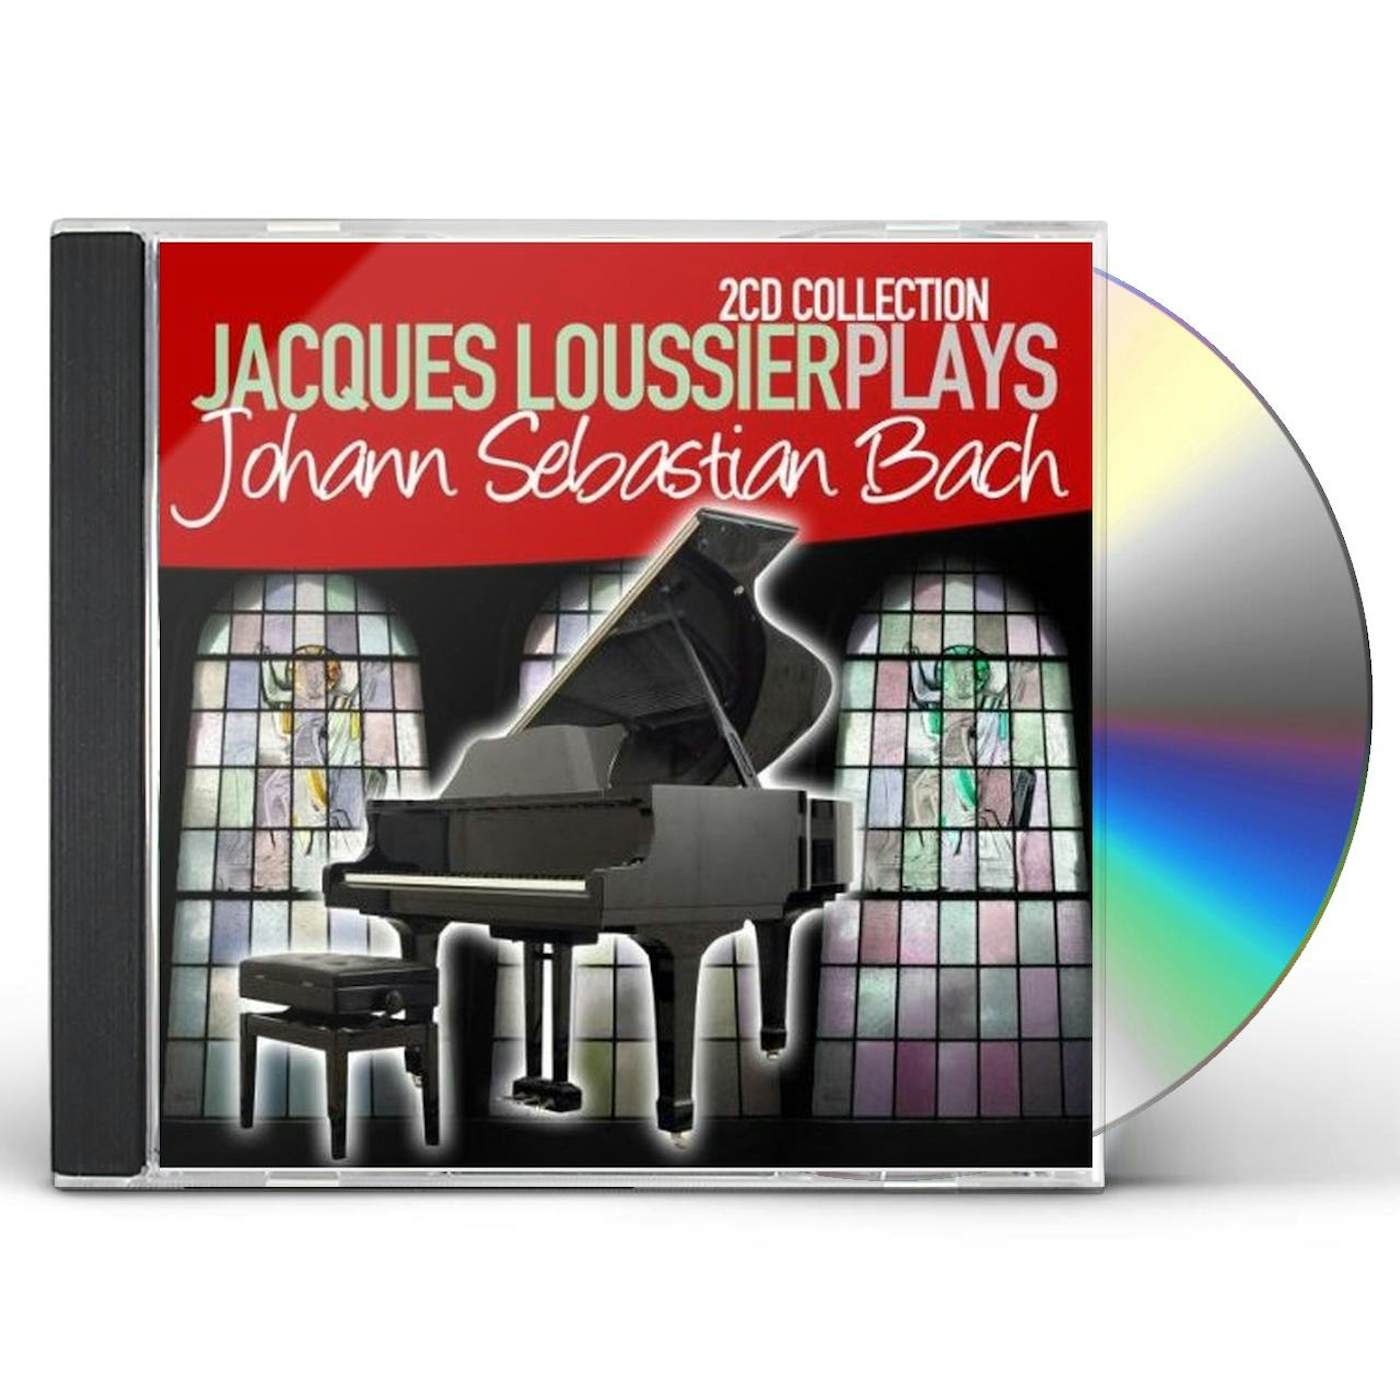 JACQUES LOUSSIER PLAYS J.S. BA CD